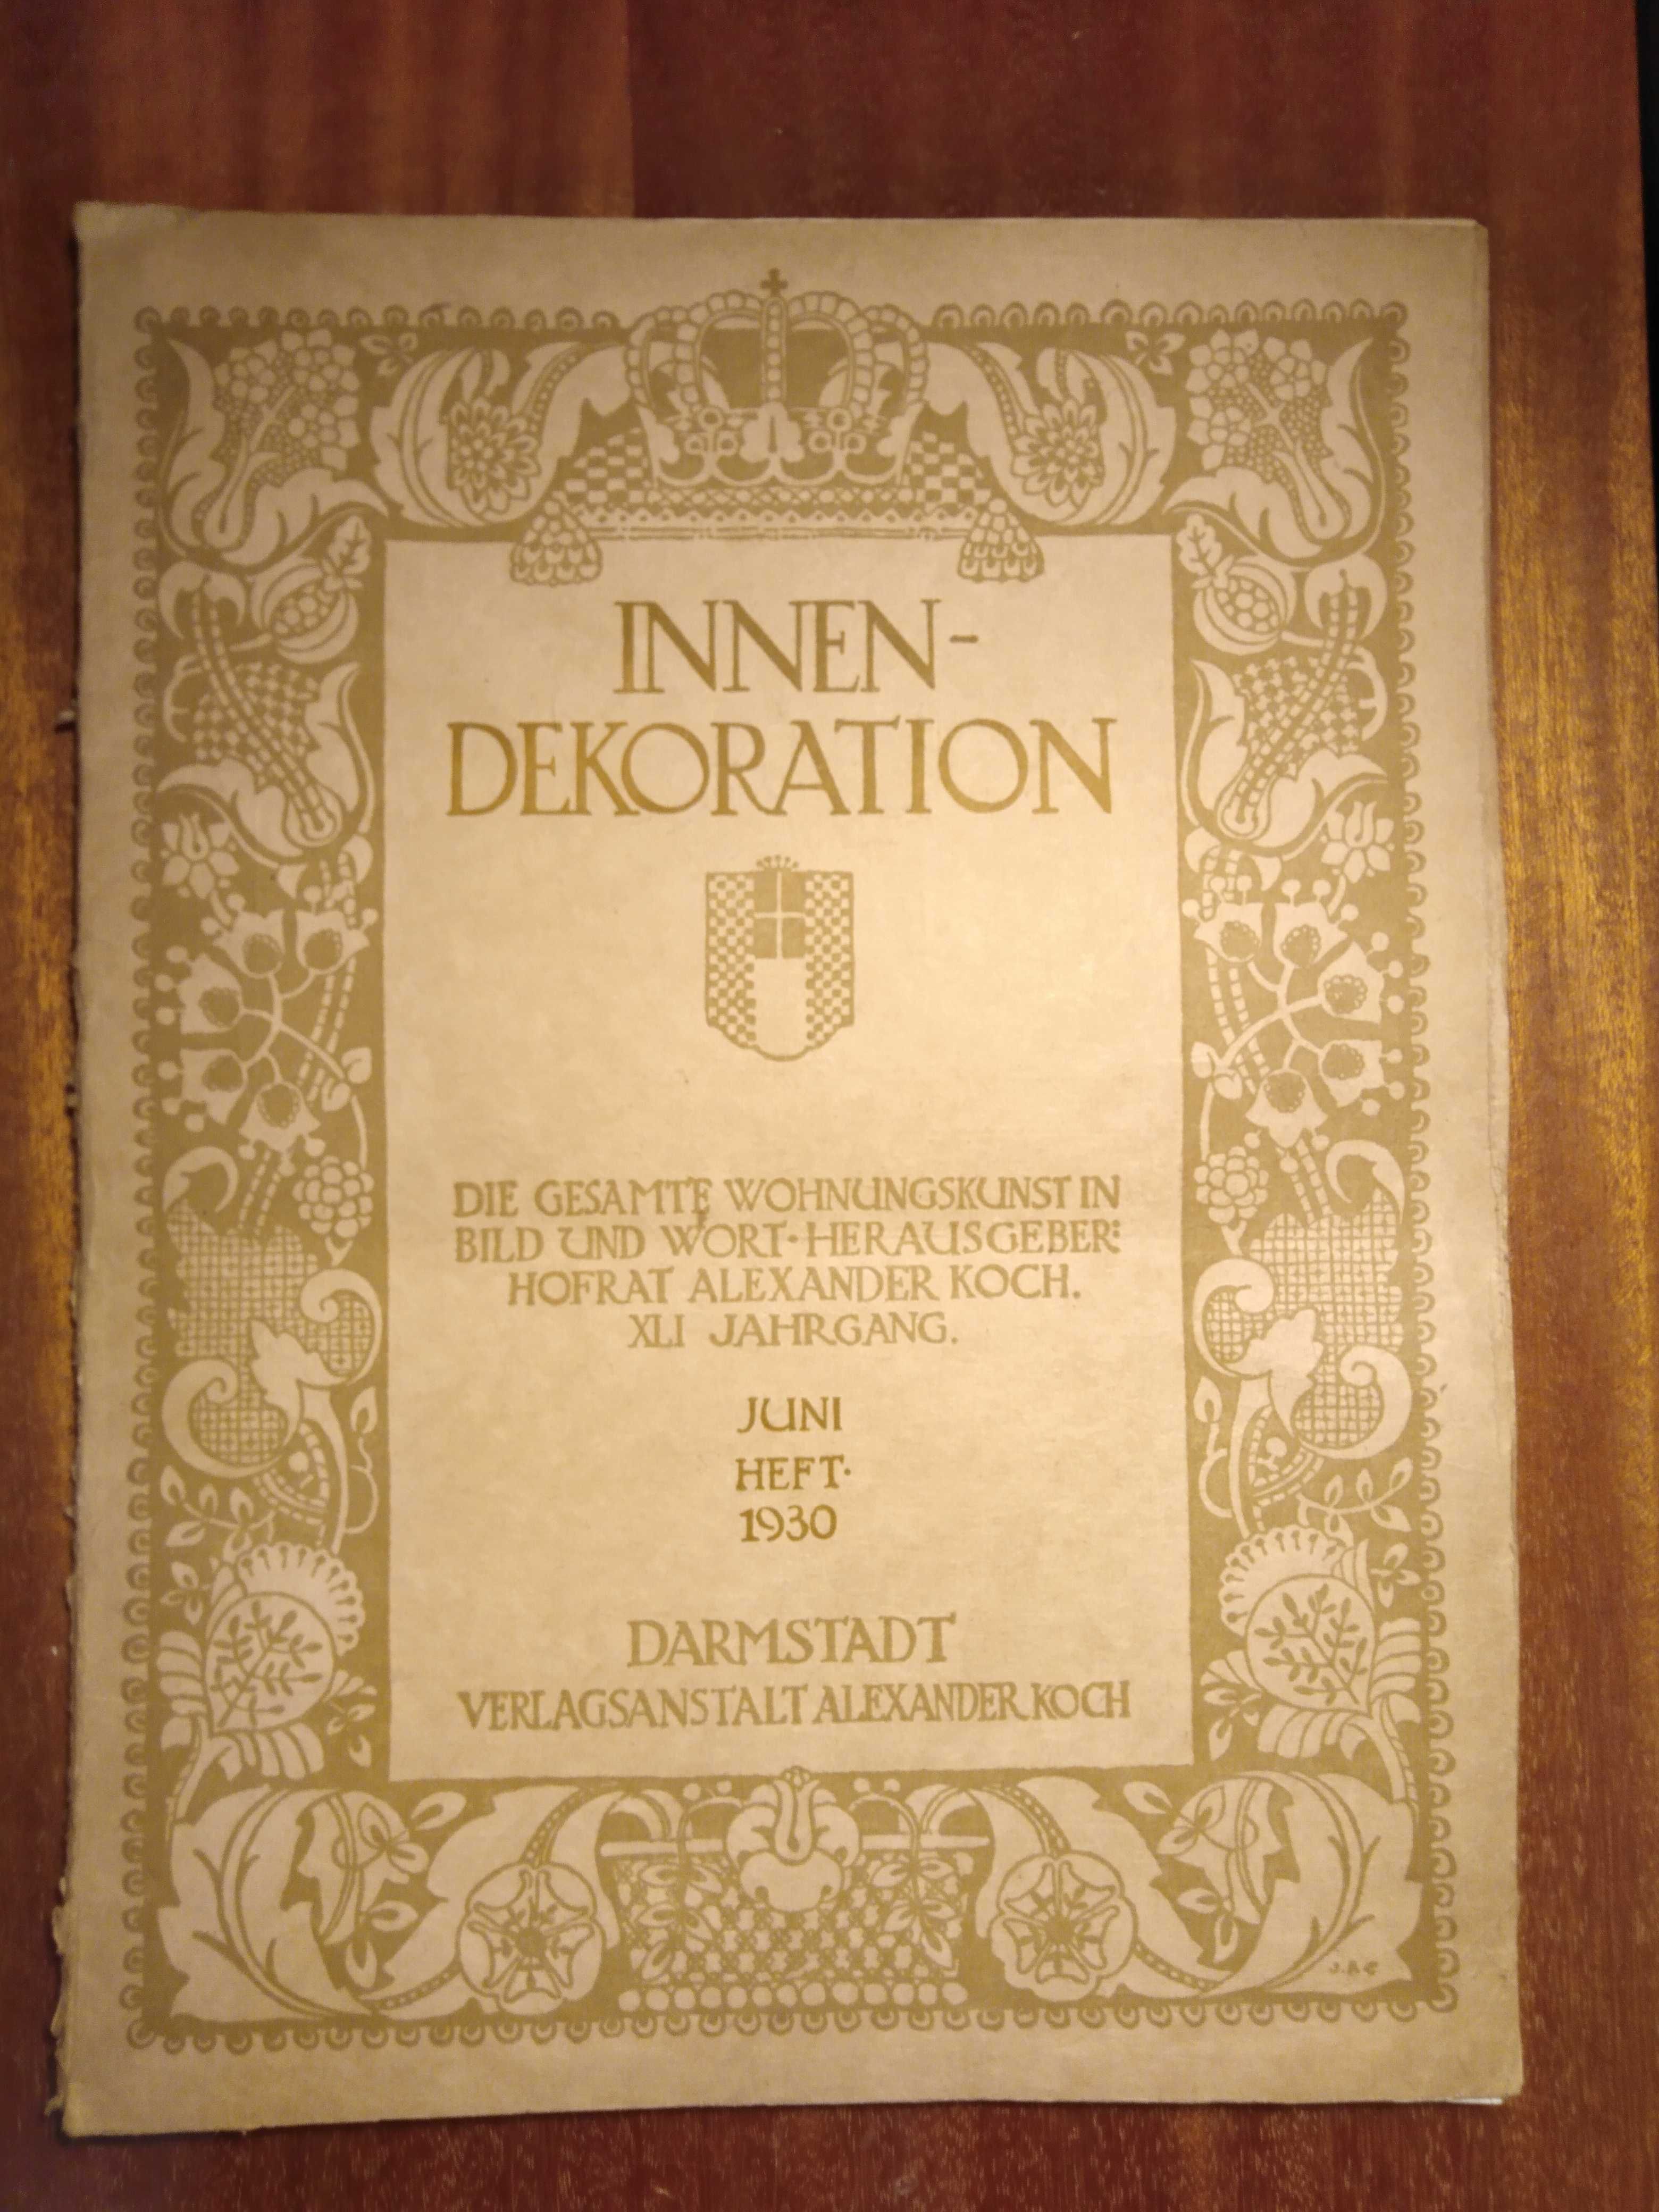 Innen-dekoration - 06/1930